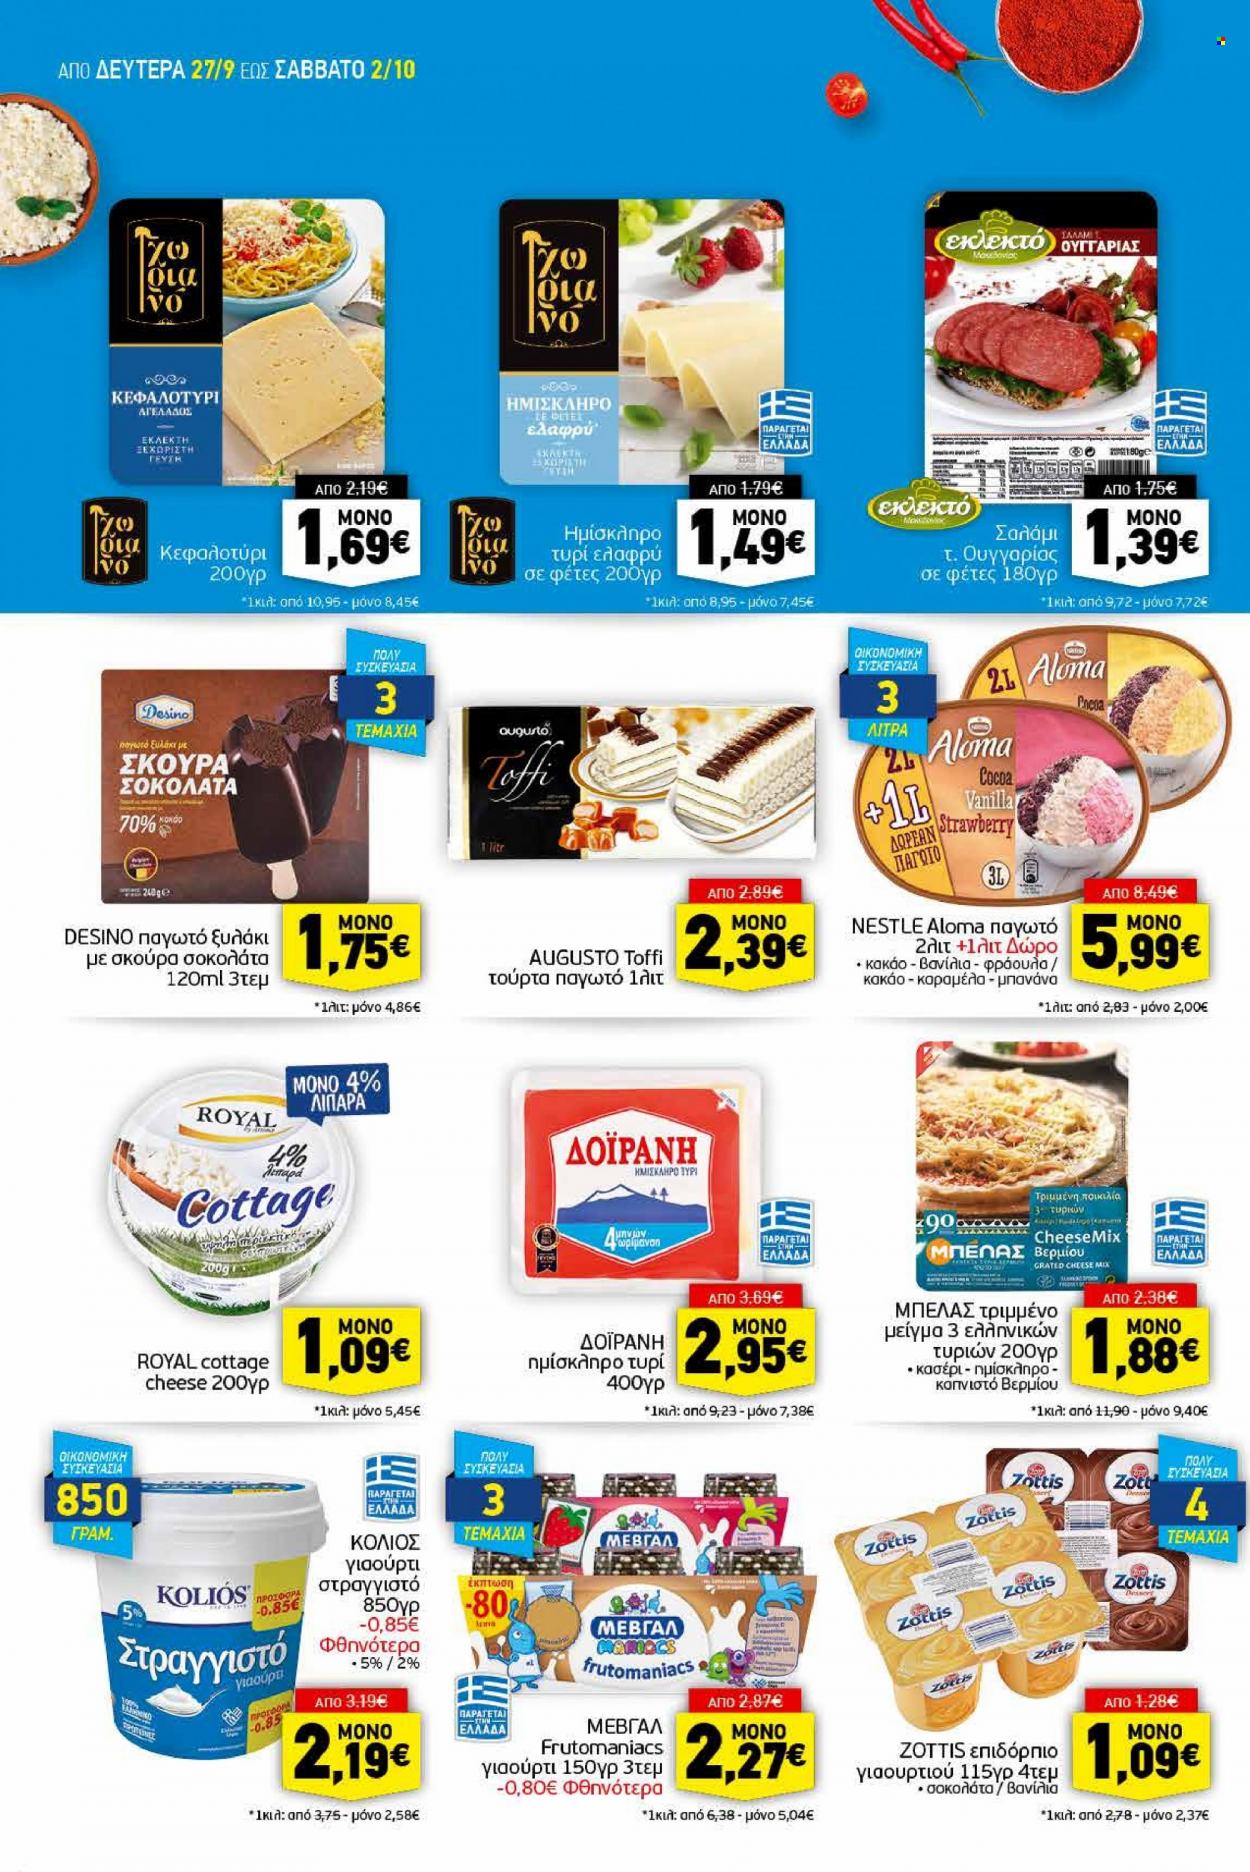 thumbnail - Φυλλάδια Discount Markt - 27.09.2021 - 02.10.2021 - Εκπτωτικά προϊόντα - γιαούρτι, παγωτό, Nestlé, σοκολάτα, κακάο. Σελίδα 4.